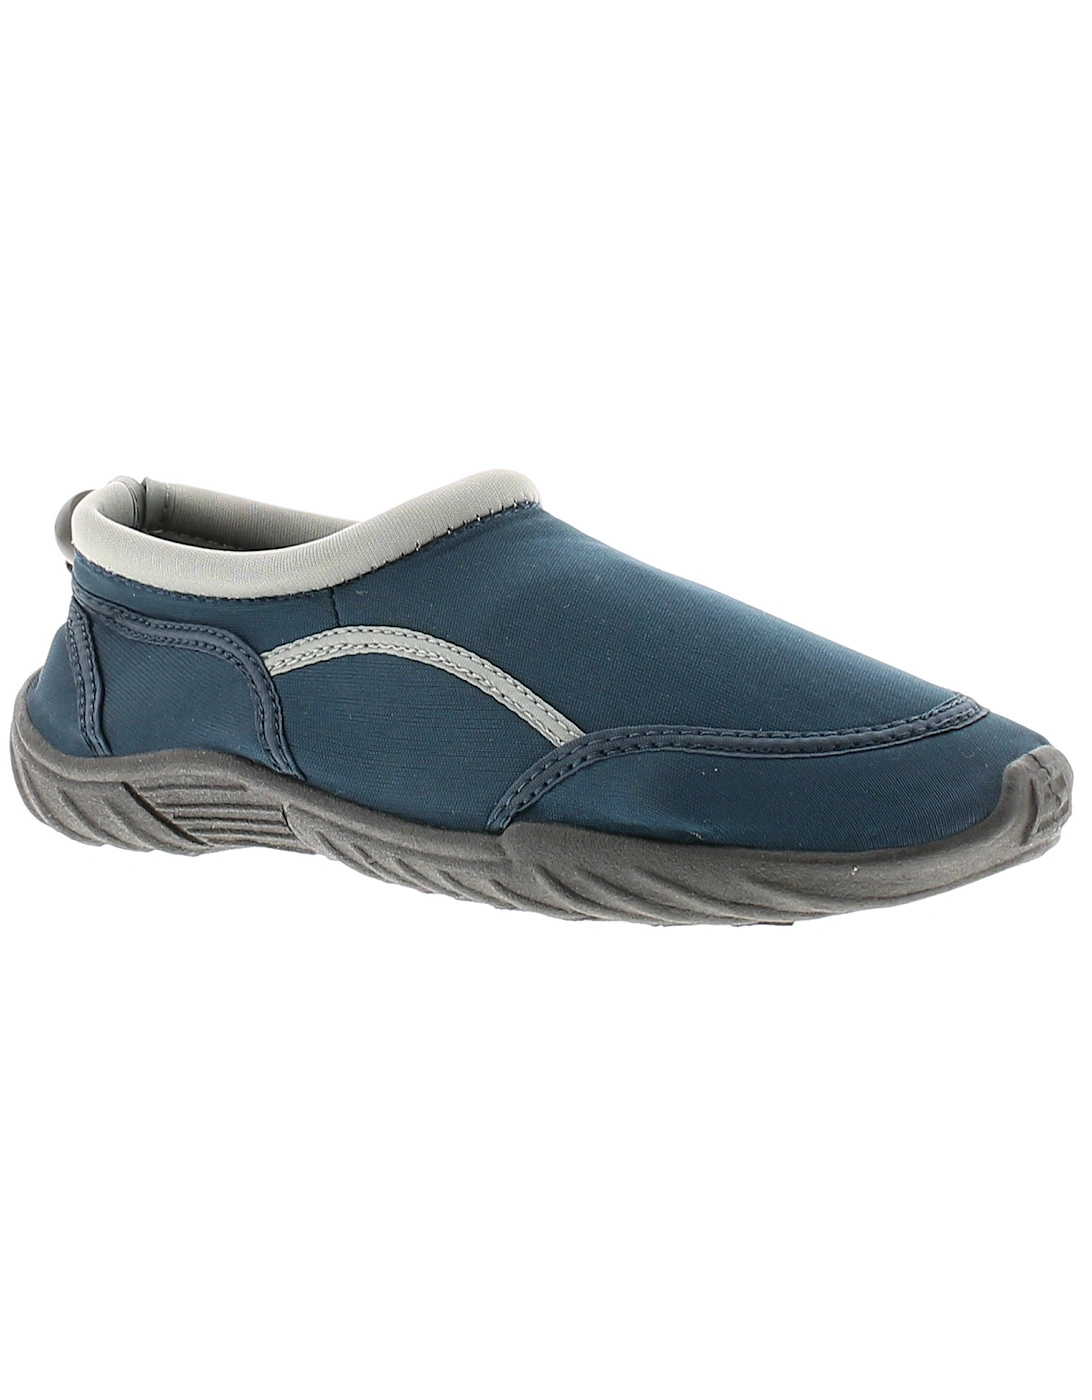 Boys Aqua Shoes Rockpool Slip On navy UK Size, 6 of 5